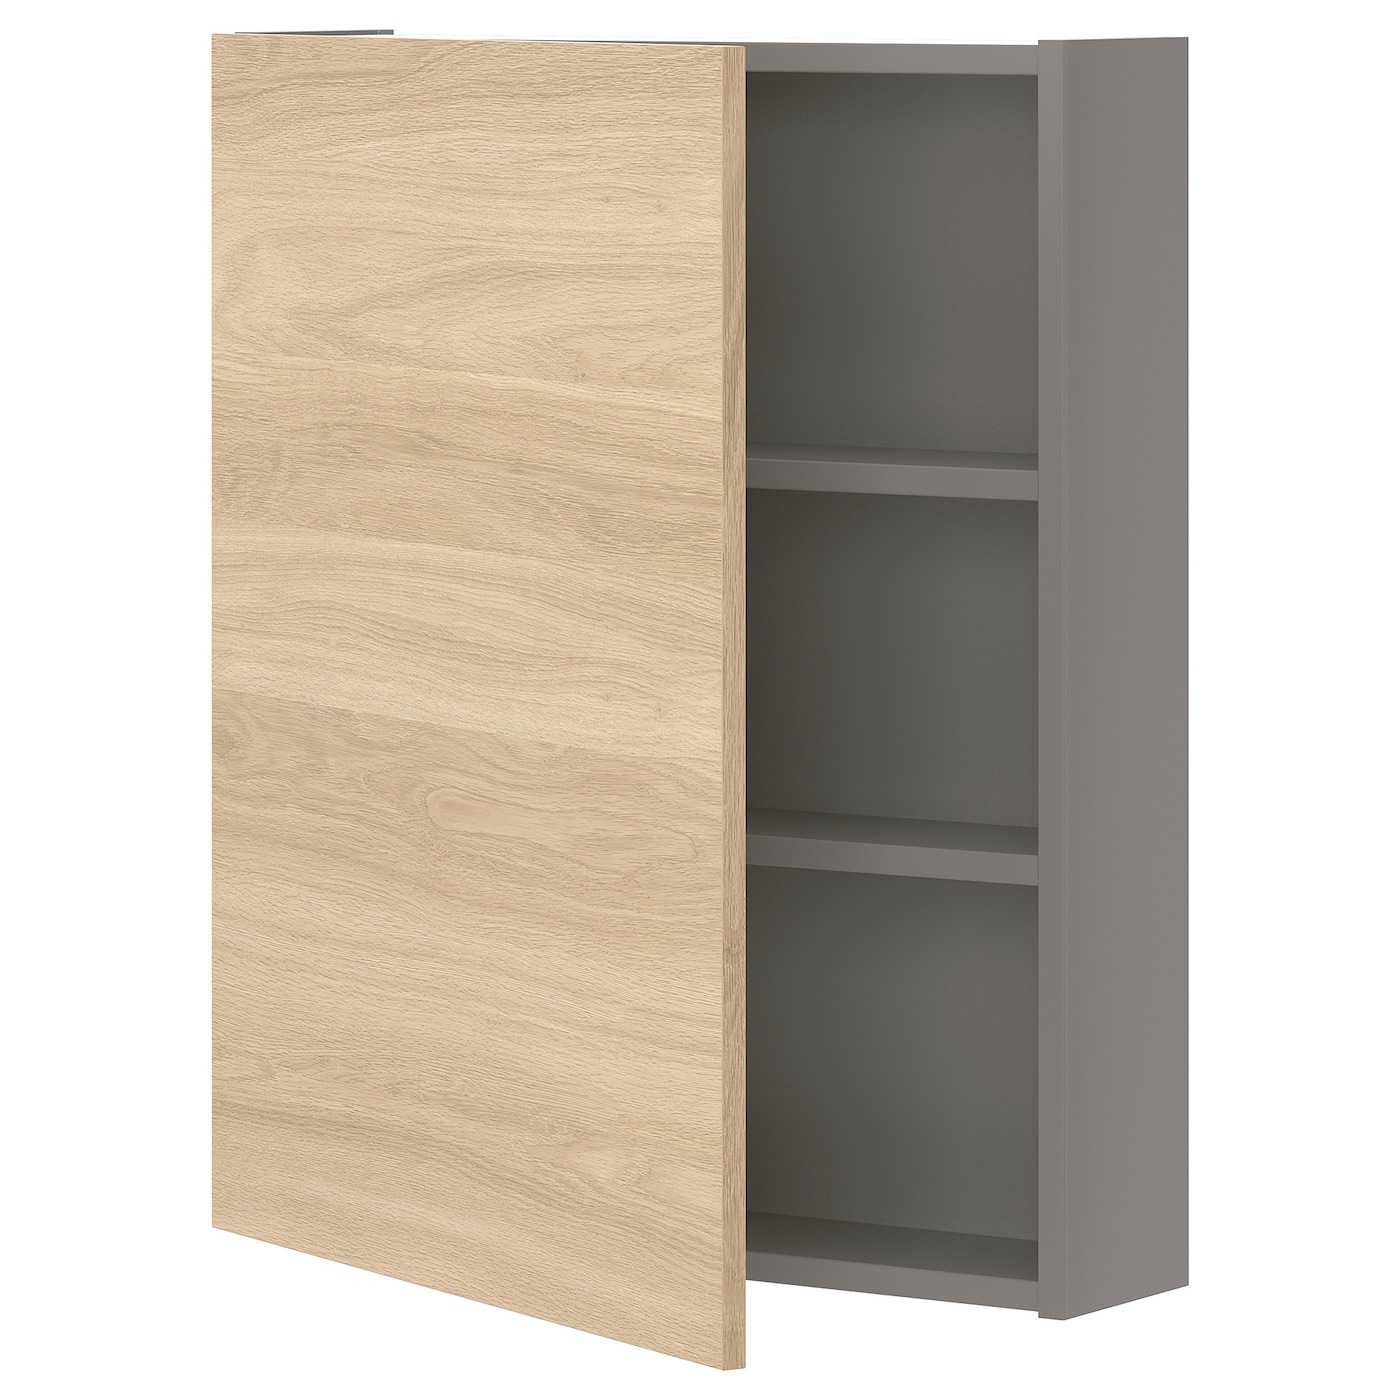 Настенный шкаф для ванной комнаты - ENHET IKEA/ ЭНХЕТ ИКЕА, 60x15x75 см, бежевый/серый